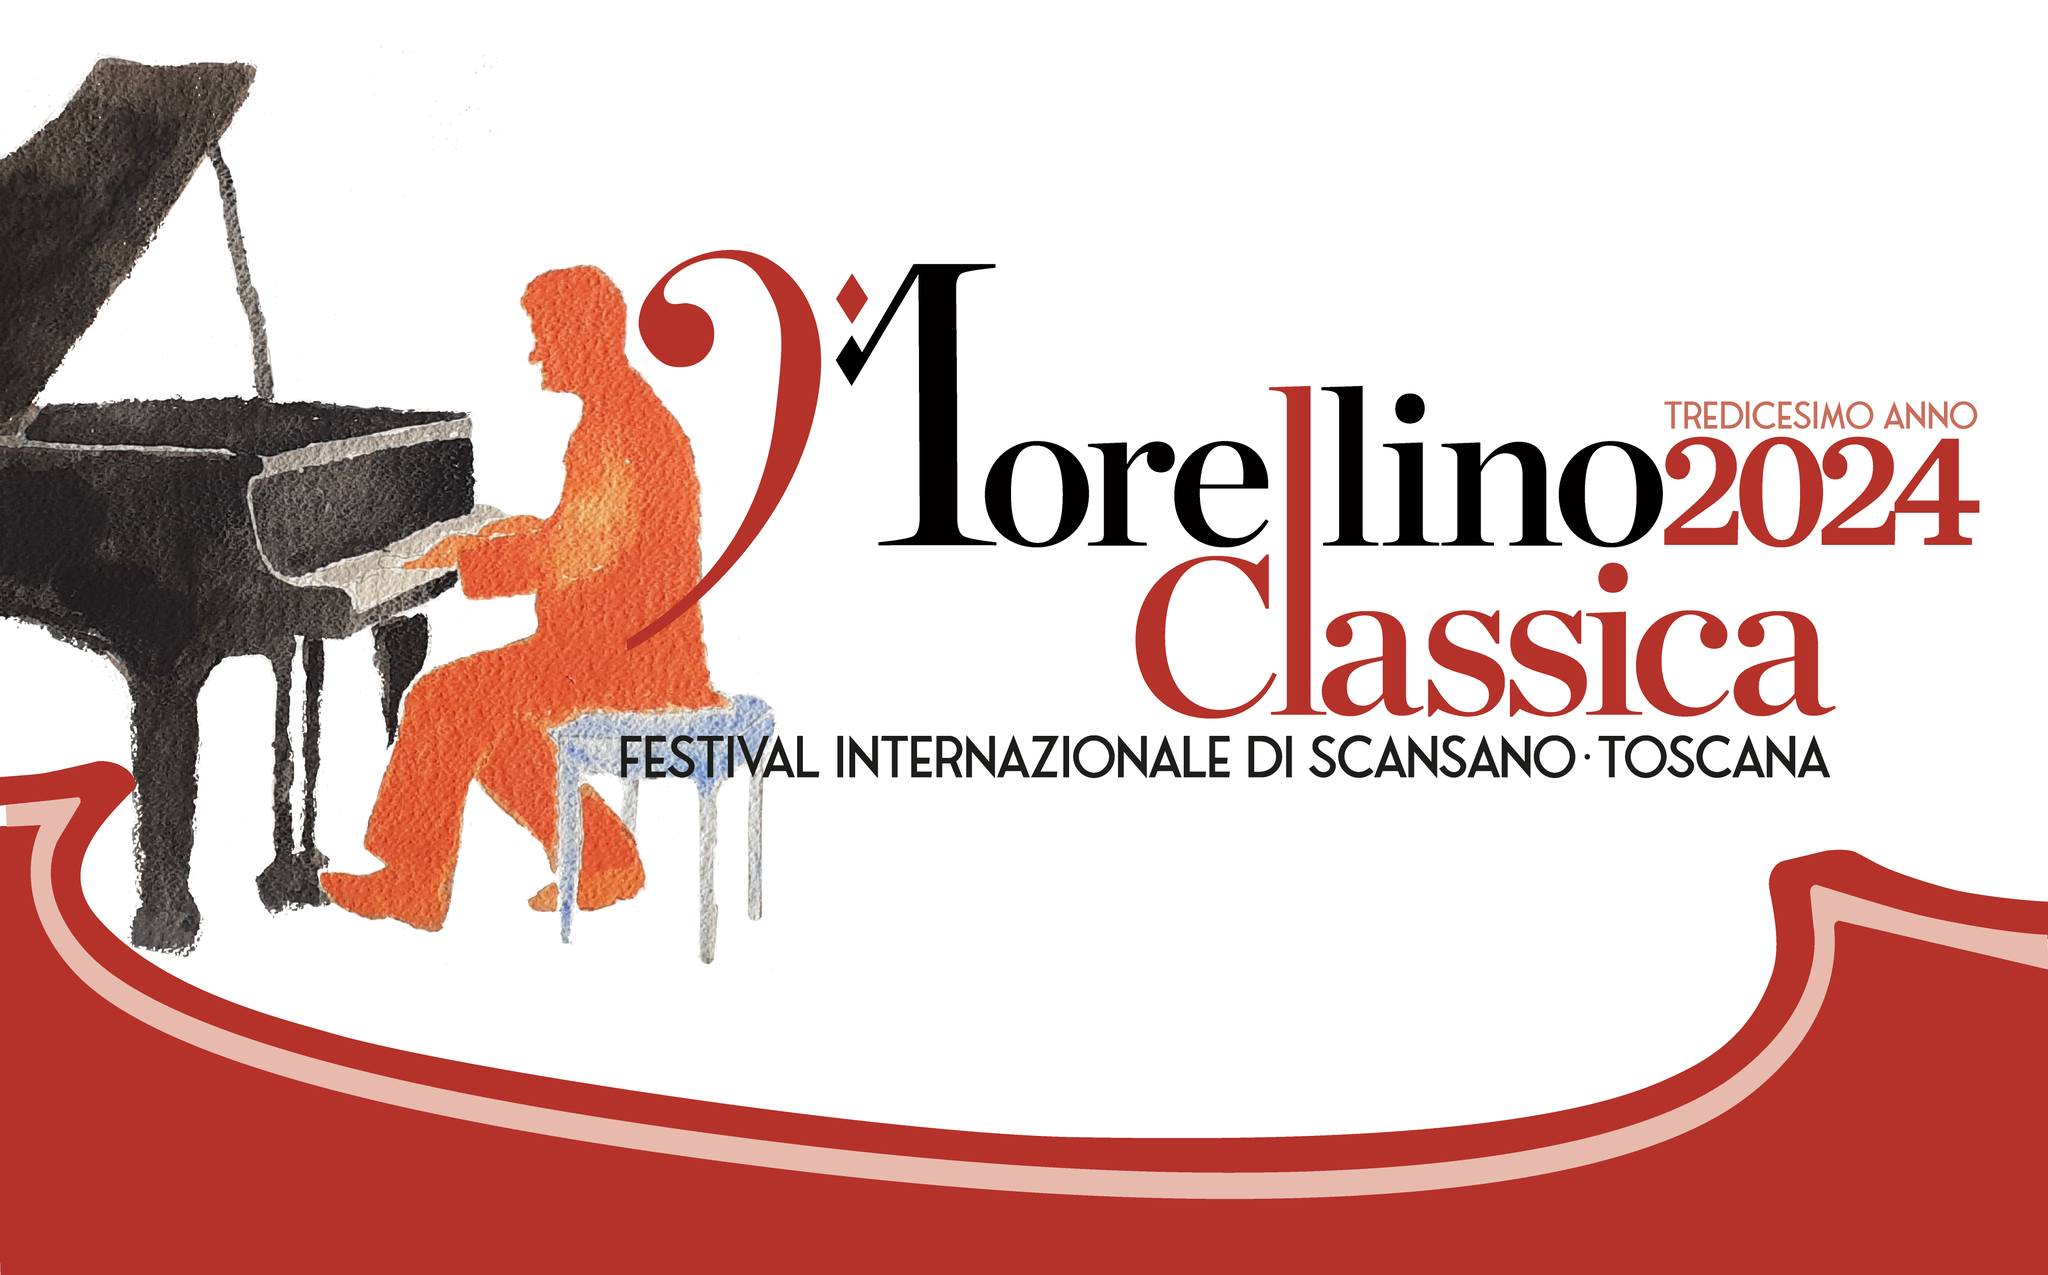 morellino 2024 classica festival